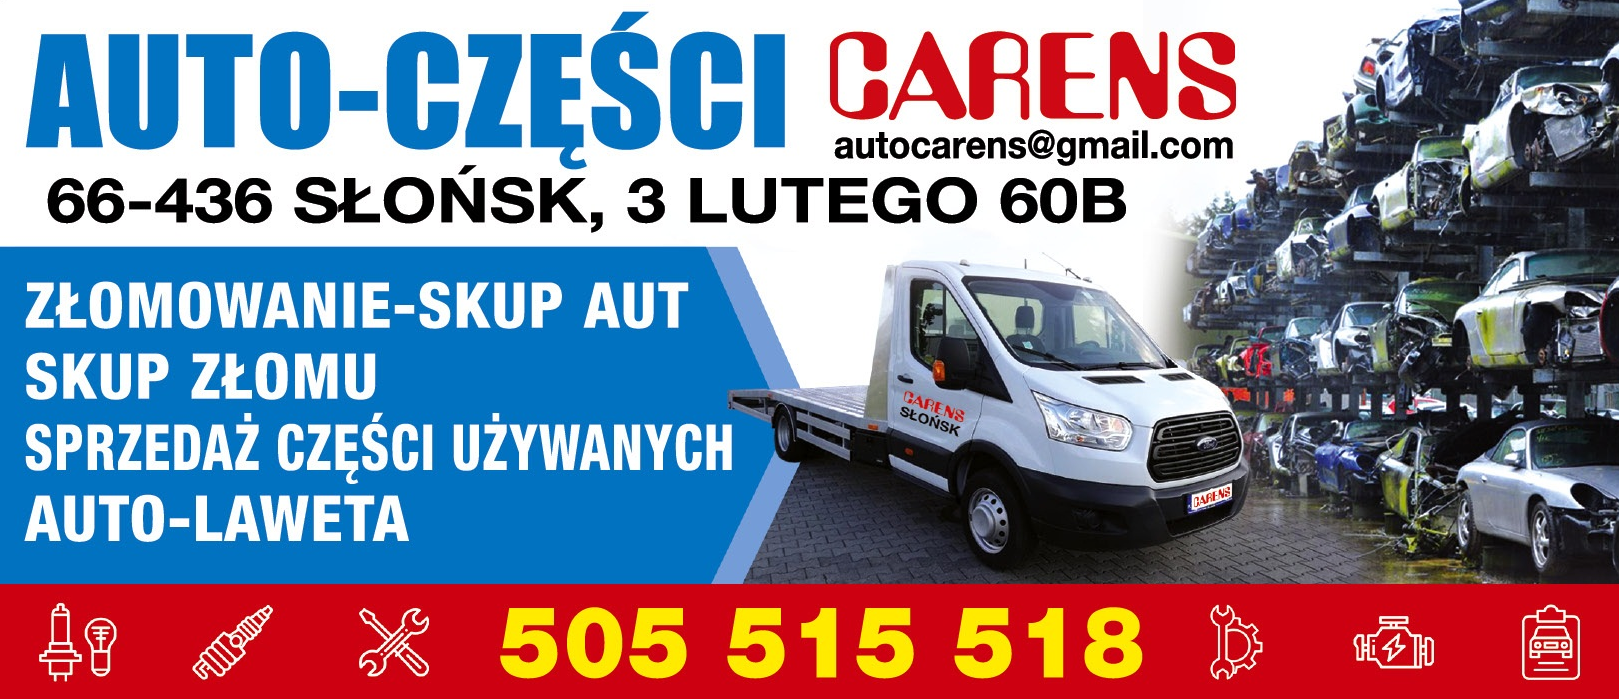 AUTO-CZĘŚCI CARENS Słońsk Złomowanie / Skup Aut / Skup Złomu / Sprzedaż Części Używanych 